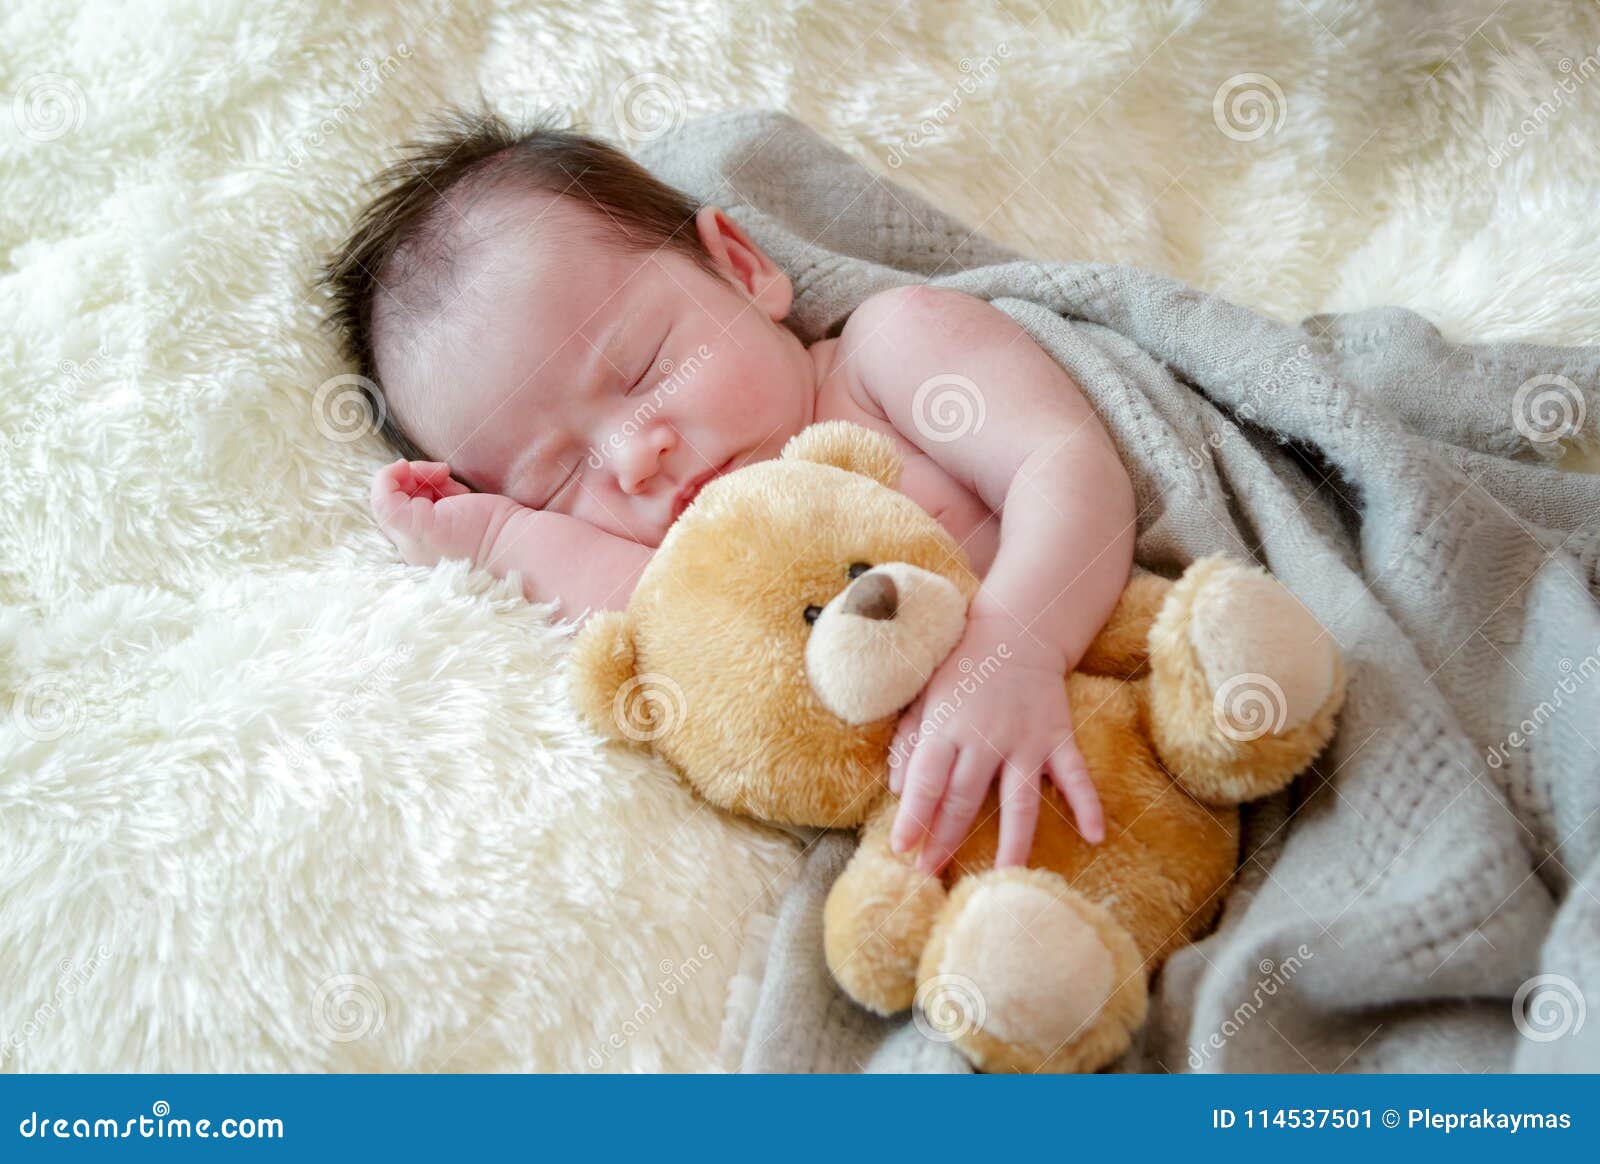 Bebé Recién Nacido Que Duerme Con Un Oso De Peluche Fotos